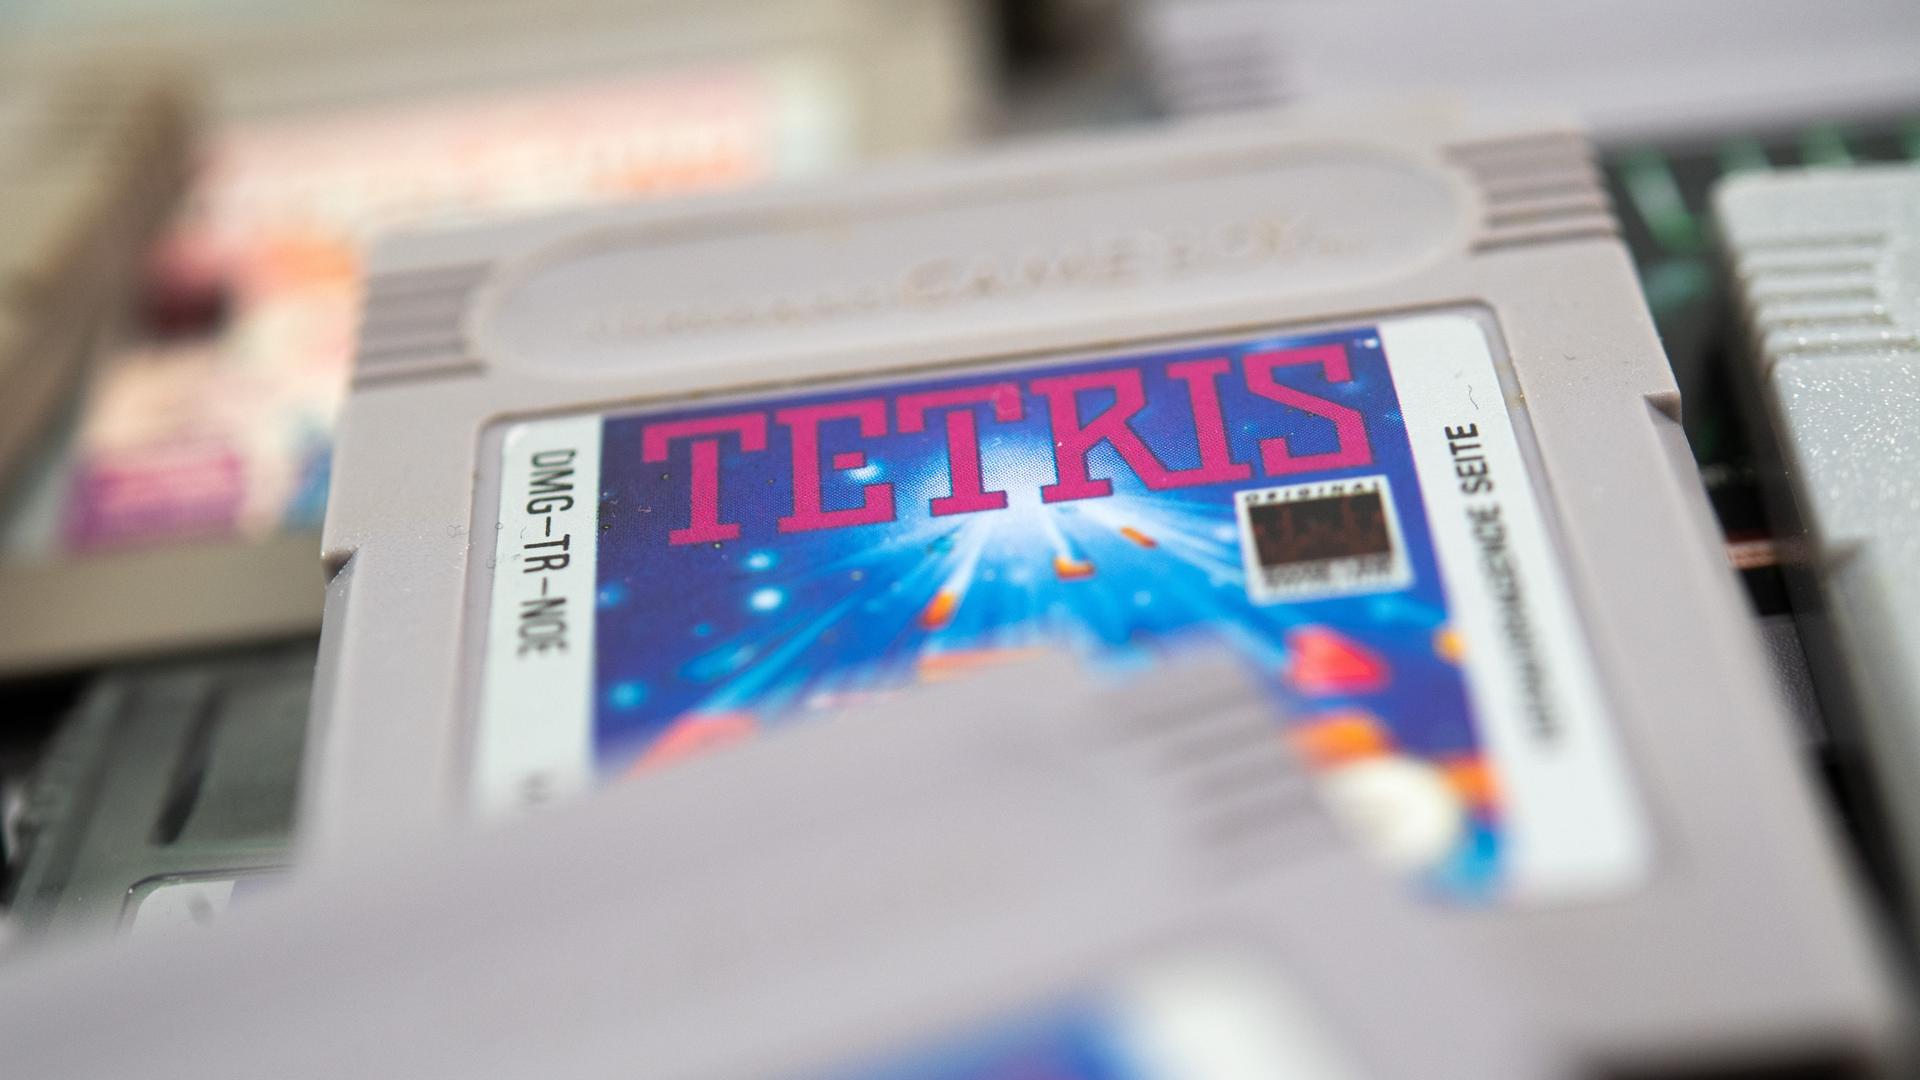 Das Game-Boy-Spiel Tetris liegt zwischen anderen Game-Boy-Spielen.